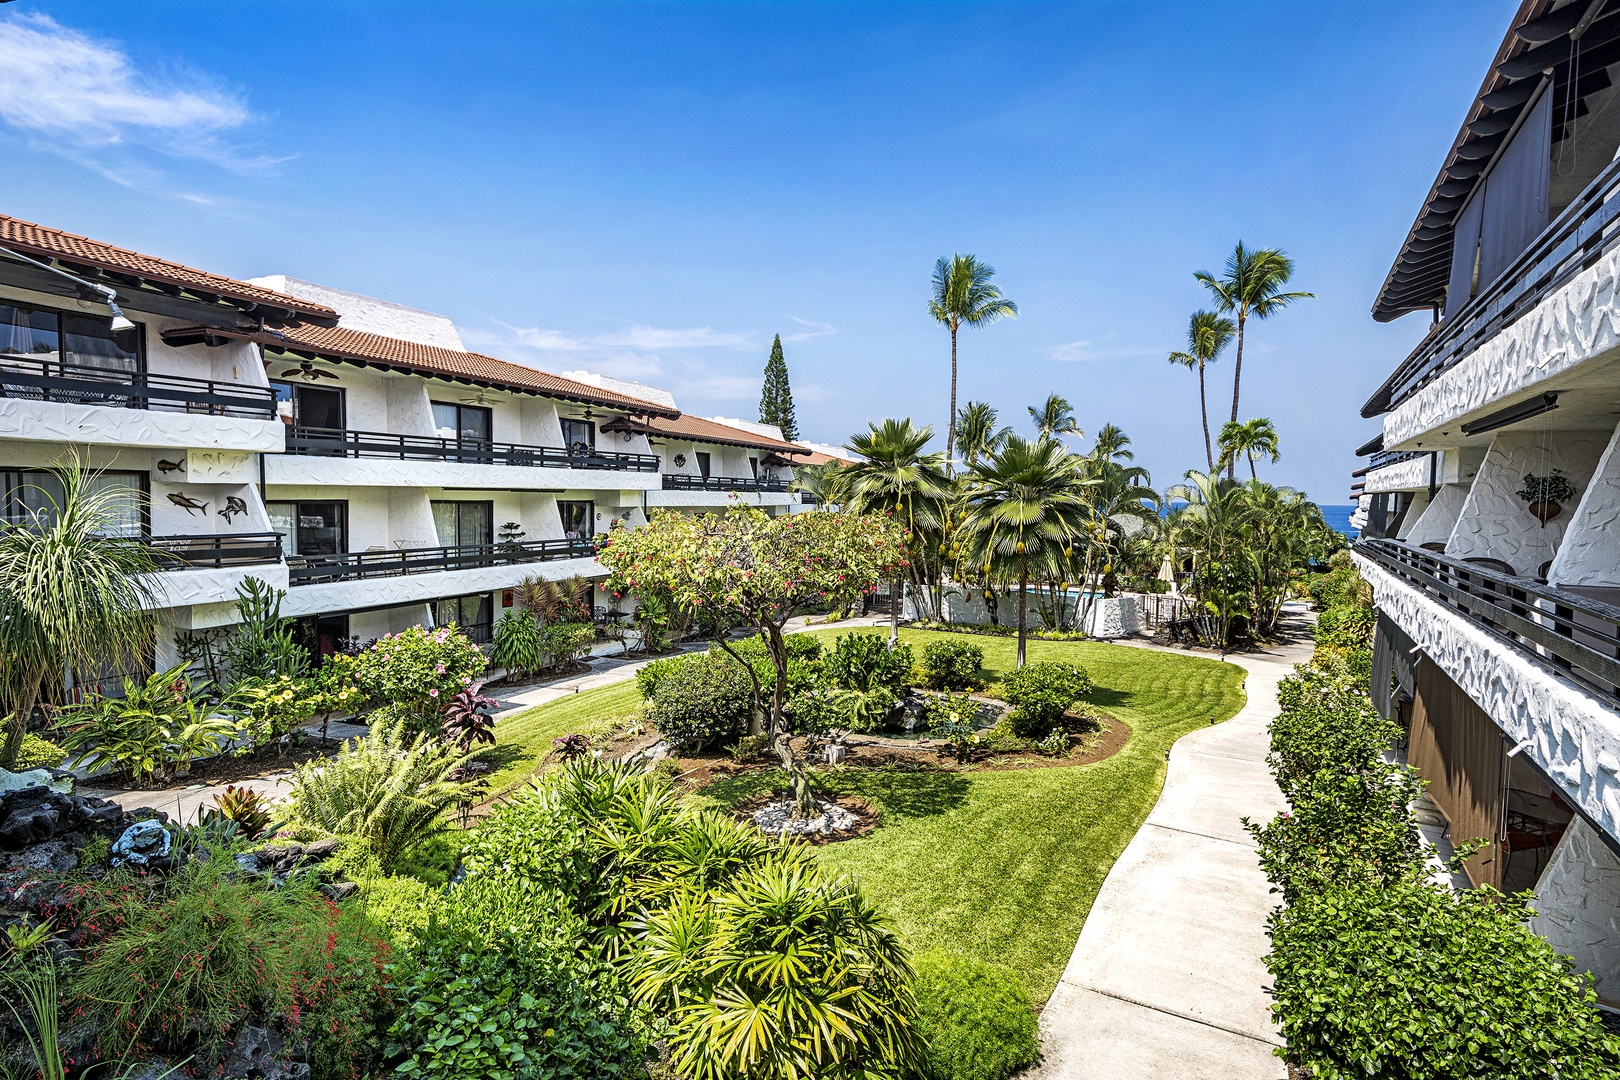 Kailua Kona Vacation Rentals, Casa De Emdeko 235 - 